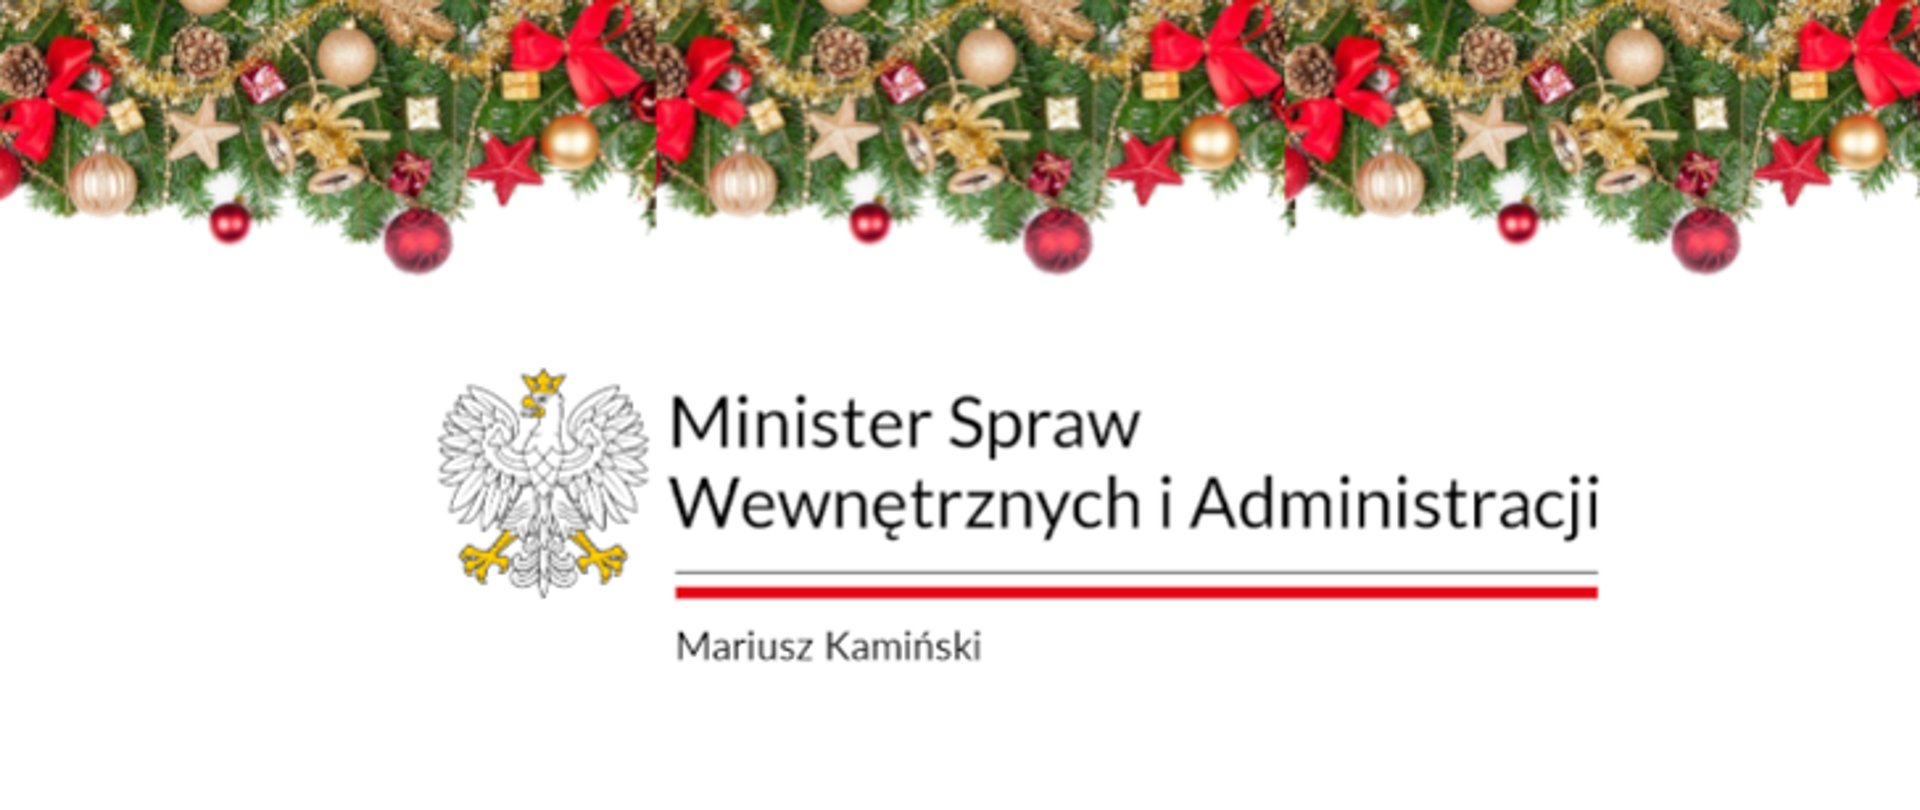 Logo Ministra Spraw Wewnętrznych i Administracji z okazji Świąt Bożego Narodzenia ozdobione banerem z dekoracjami świątecznymi